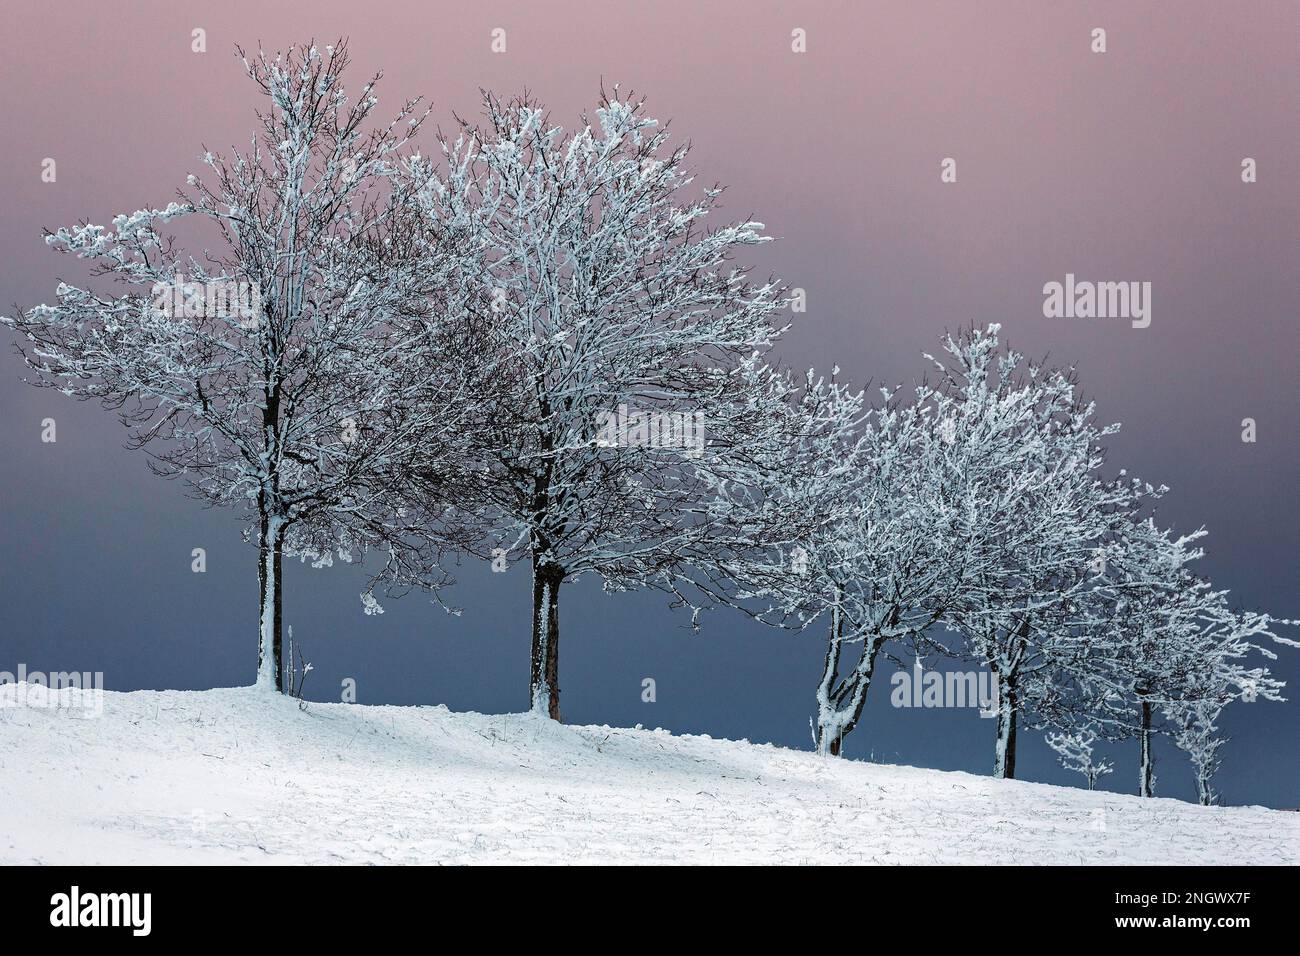 Rangée d'arbres enneigée dans un paysage enneigé, ciel nocturne, Schauinsland, Forêt Noire, Bade-Wurtemberg, Allemagne Banque D'Images